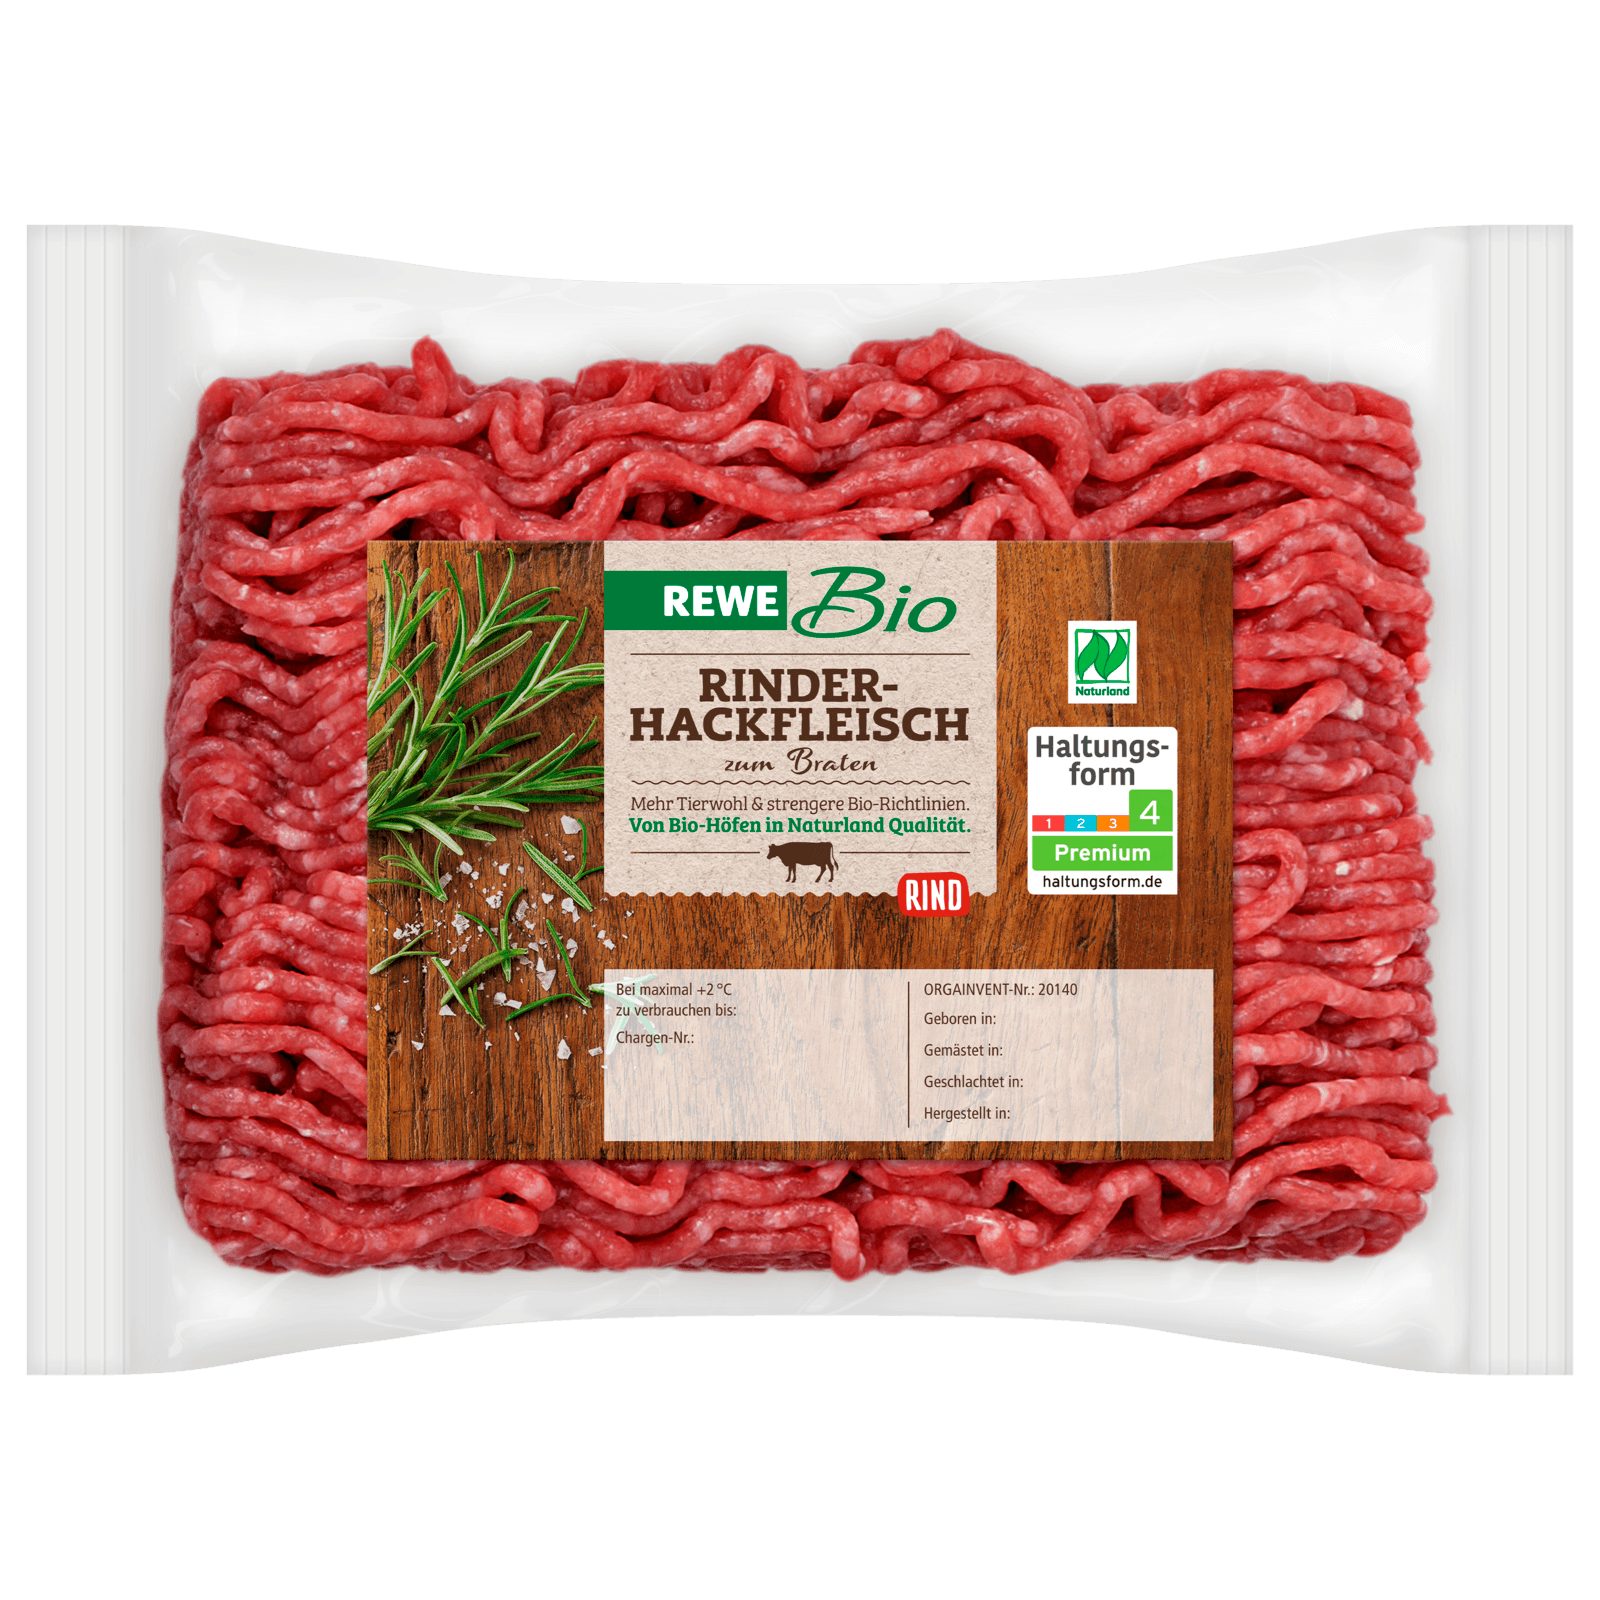 REWE Bio Rinderhackfleisch 400g